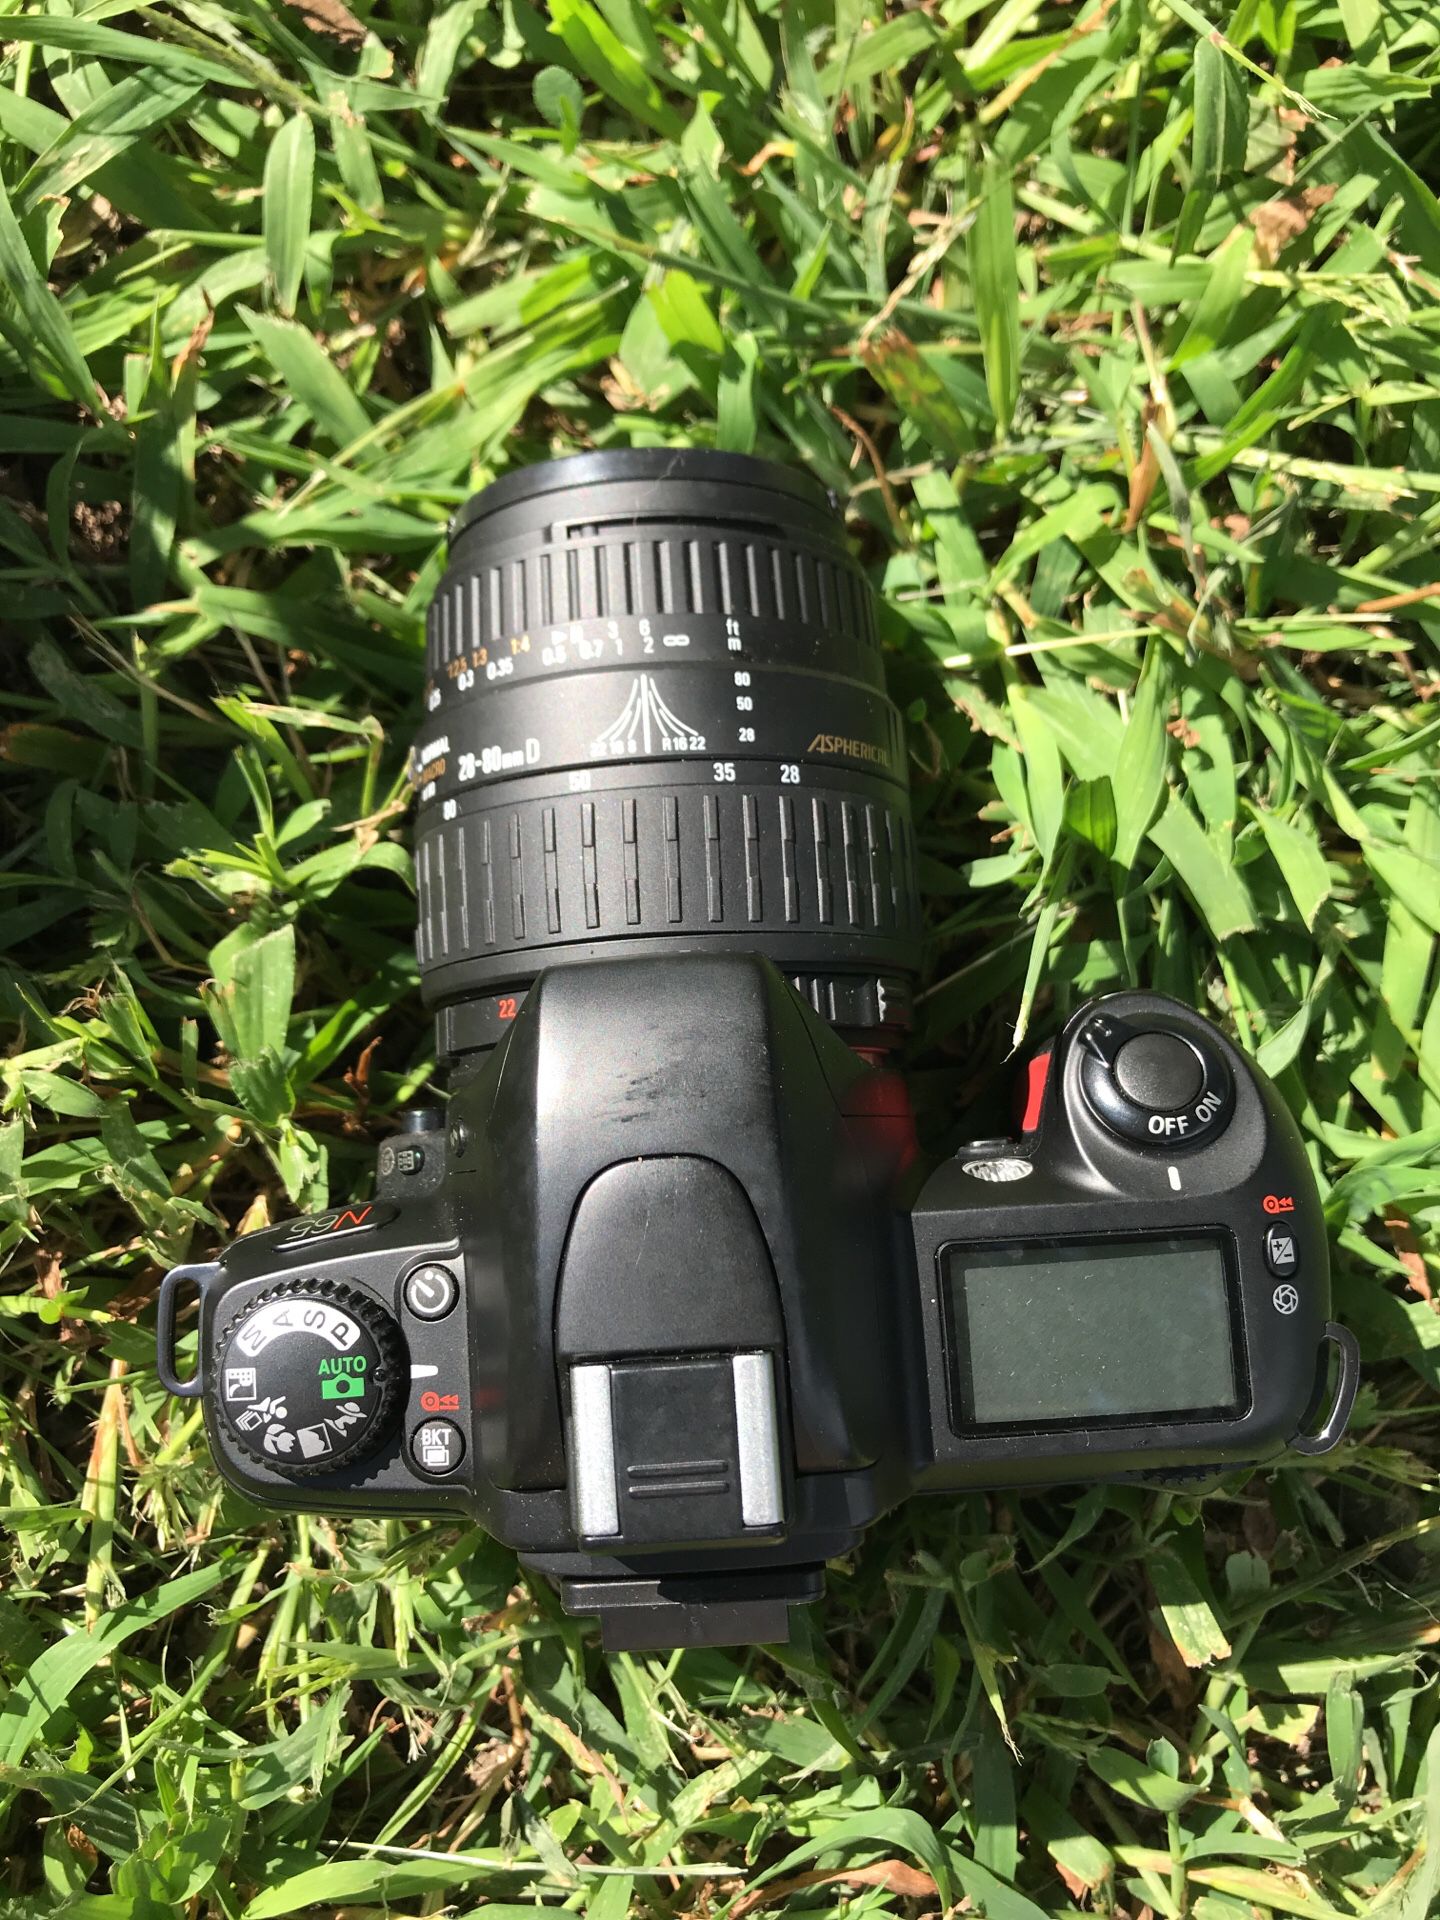 Nikon N65 (35mm) & Tripod